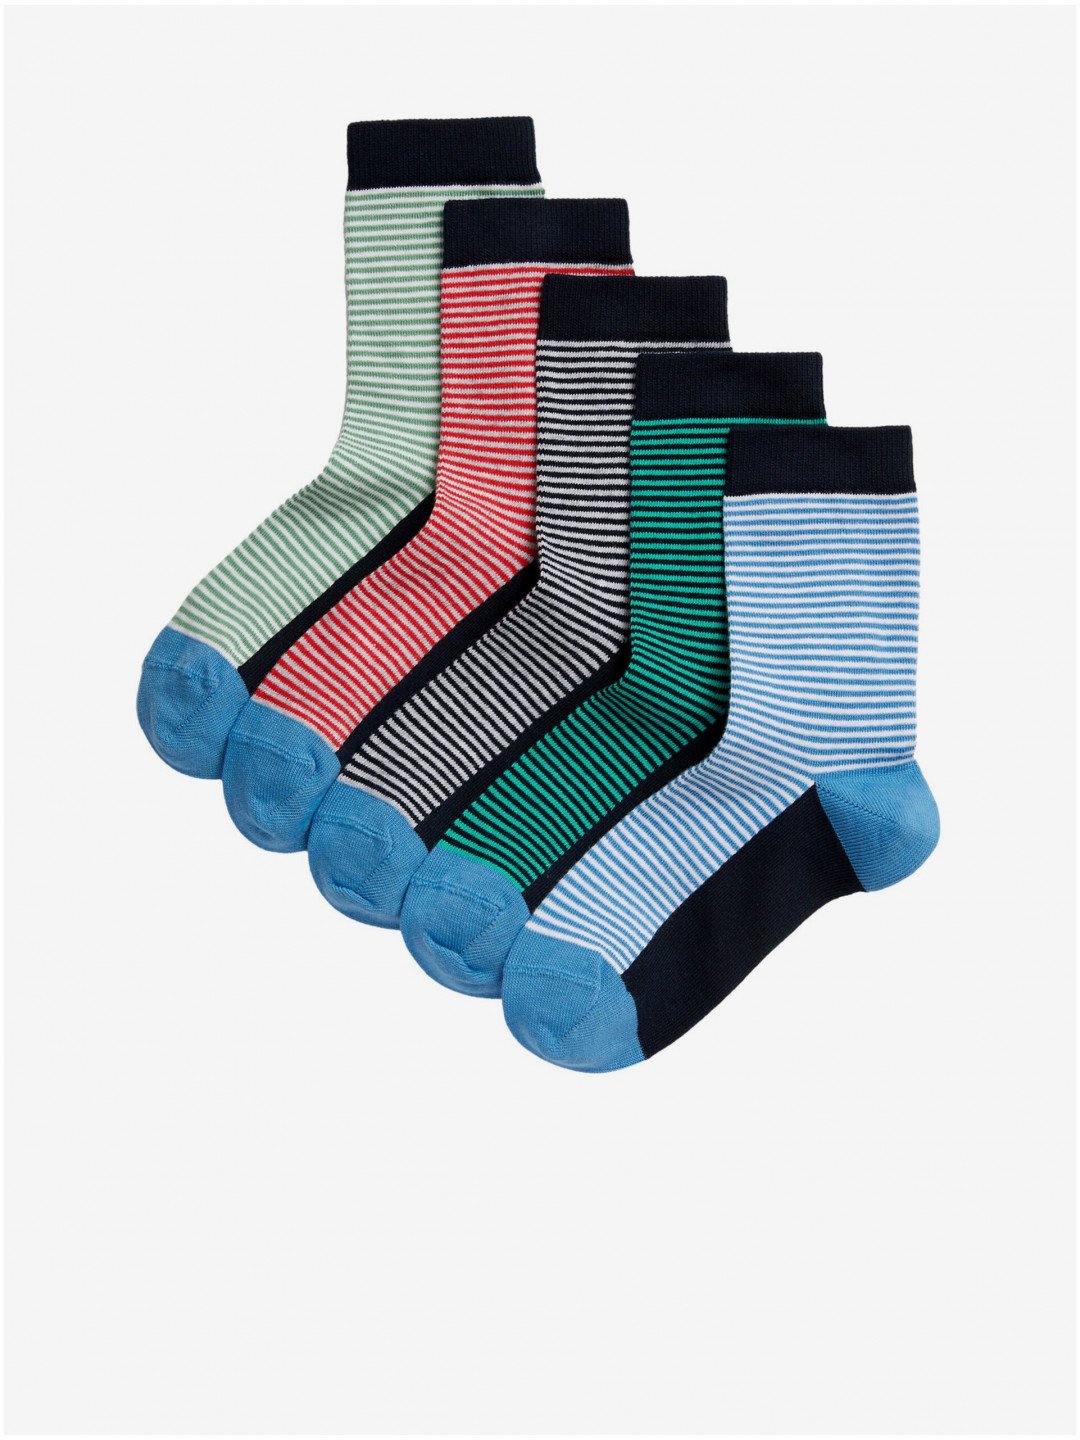 Sada pěti holčičích proužkovaných ponožek Marks & Spencer